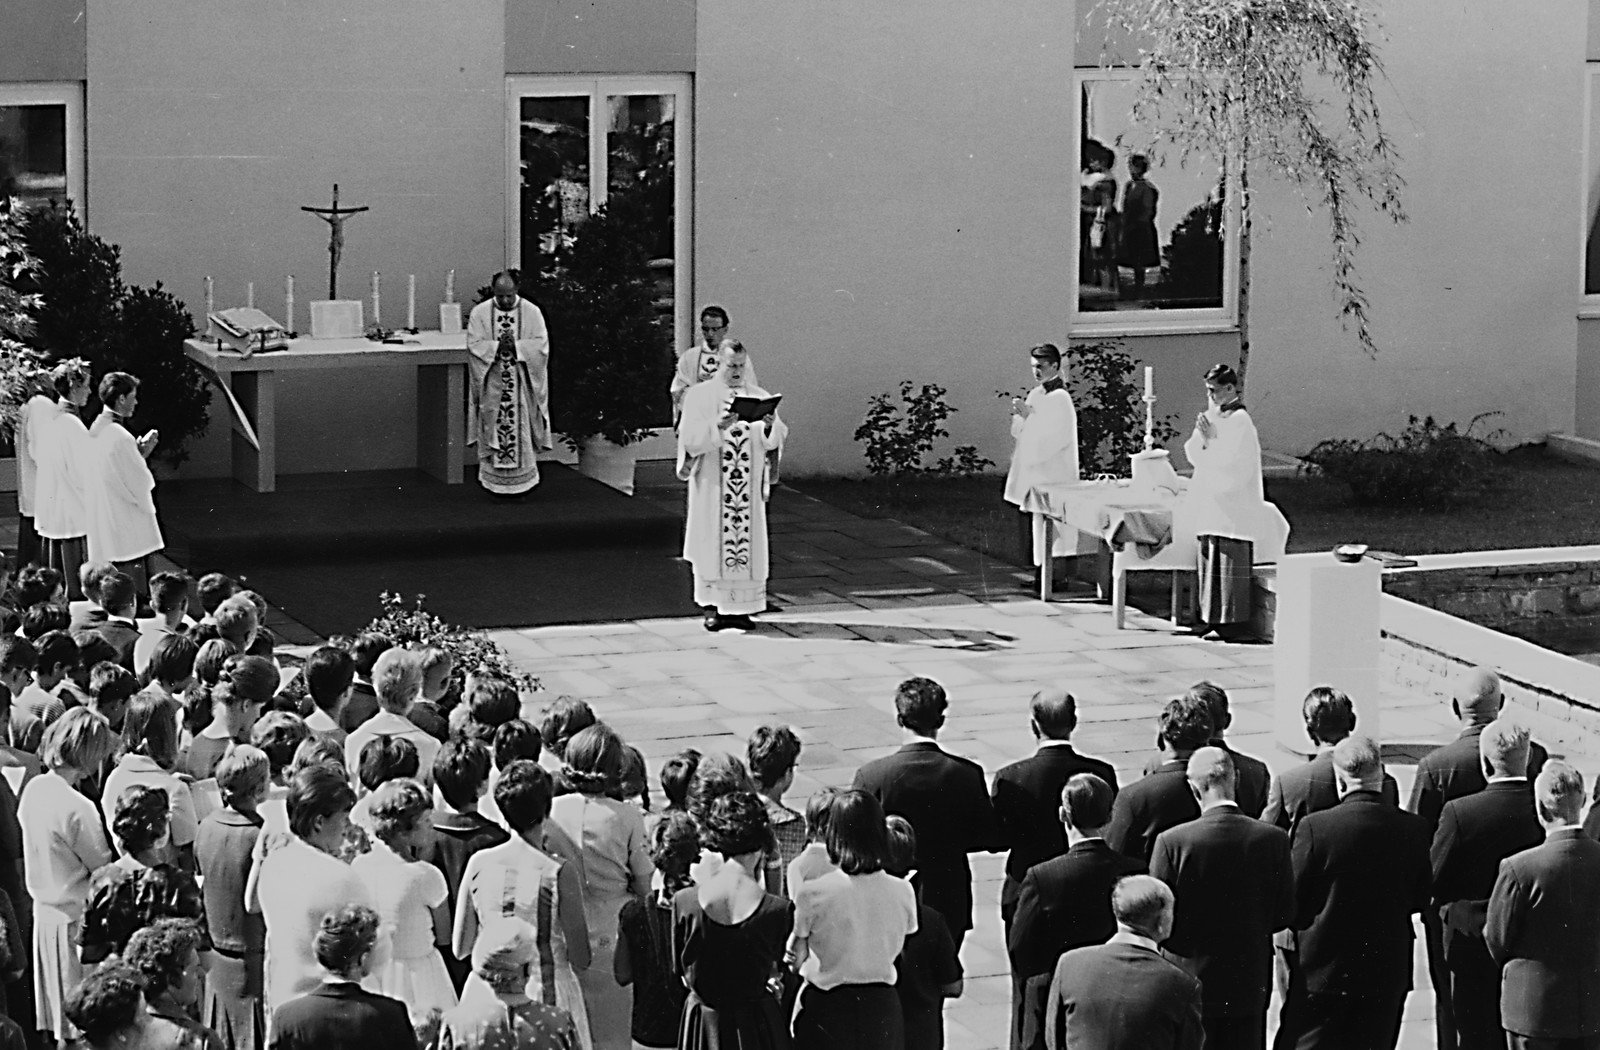 Feierlicher Gottesdienst im sonnendurchfluteten Atrium bei der Eröffnung des Gymnasiums Marktoberdorf im September 1962.